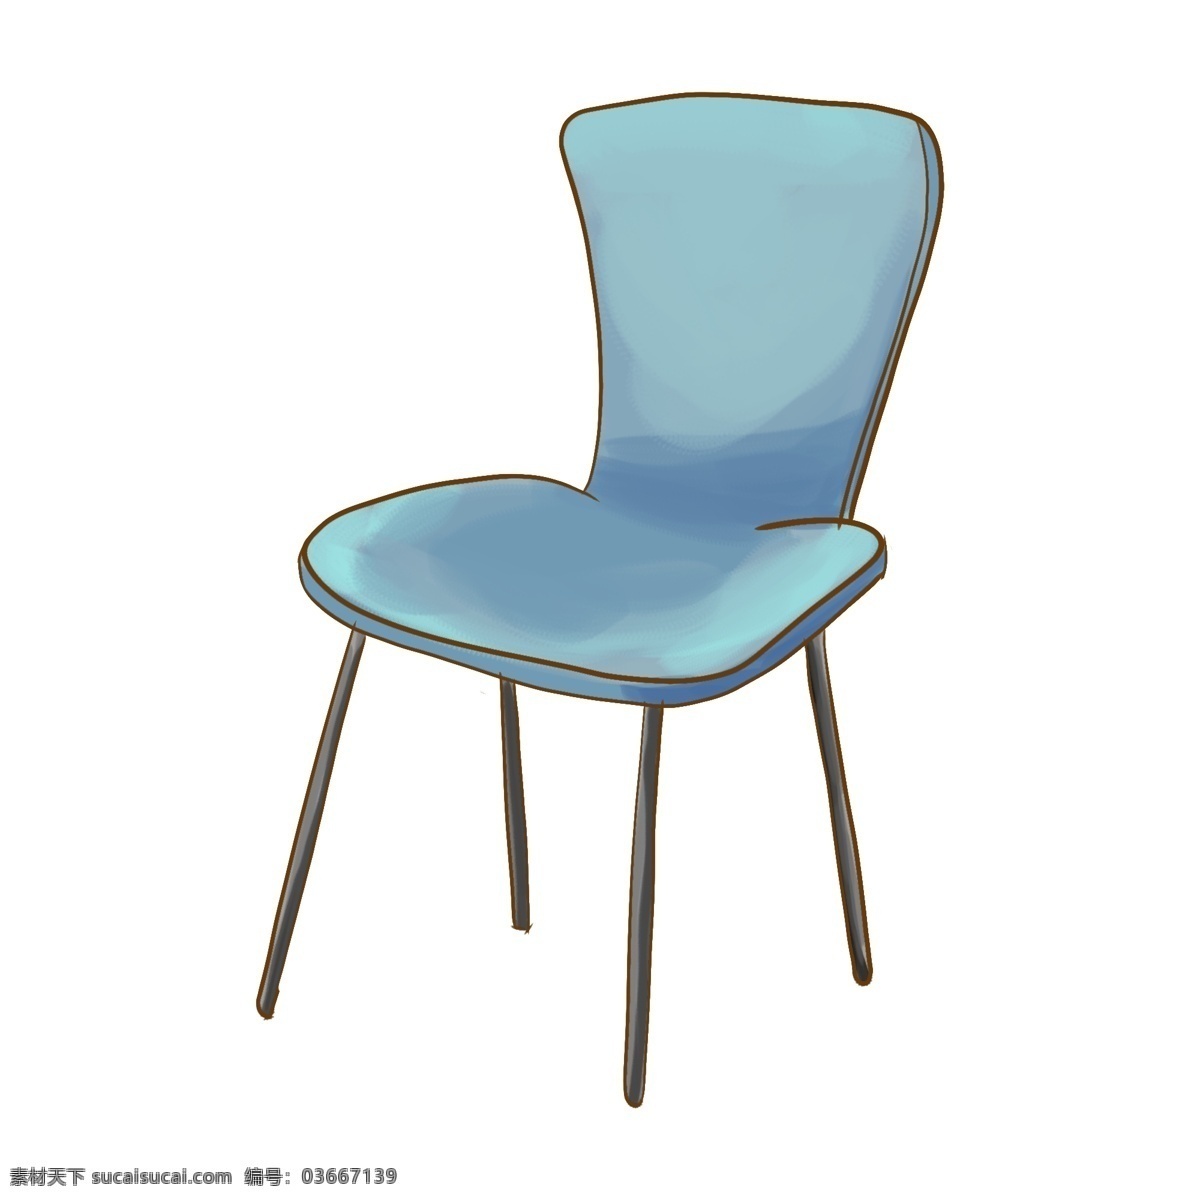 蓝色 椅子 装饰 插画 蓝色的椅子 不锈钢椅子 漂亮的椅子 创意椅子 立体椅子 精美椅子 家具椅子